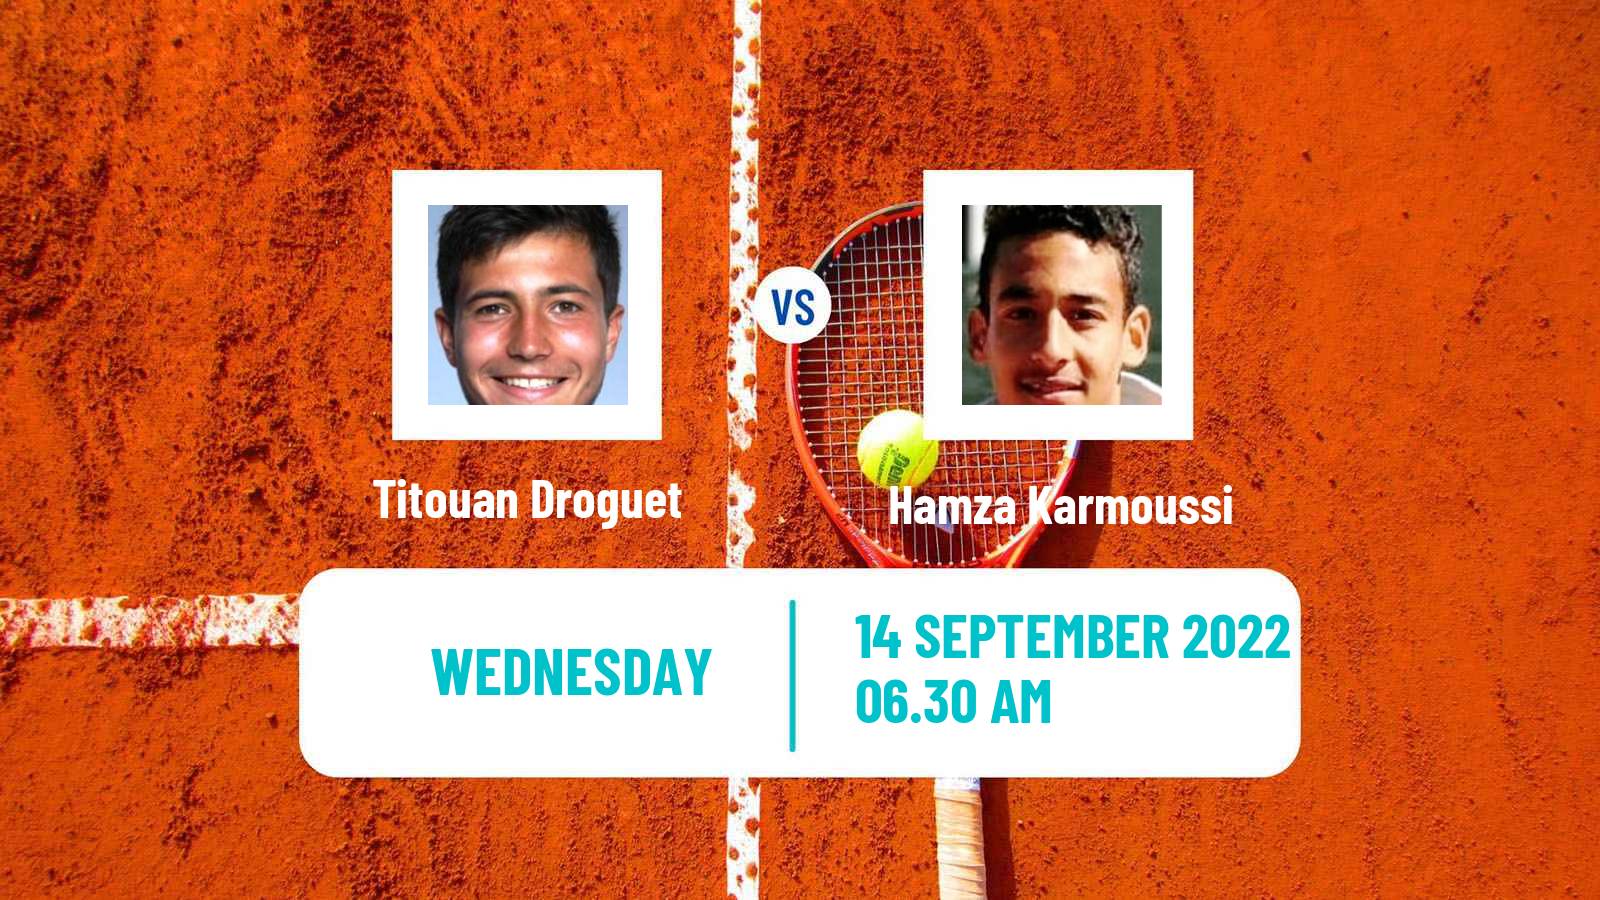 Tennis ITF Tournaments Titouan Droguet - Hamza Karmoussi